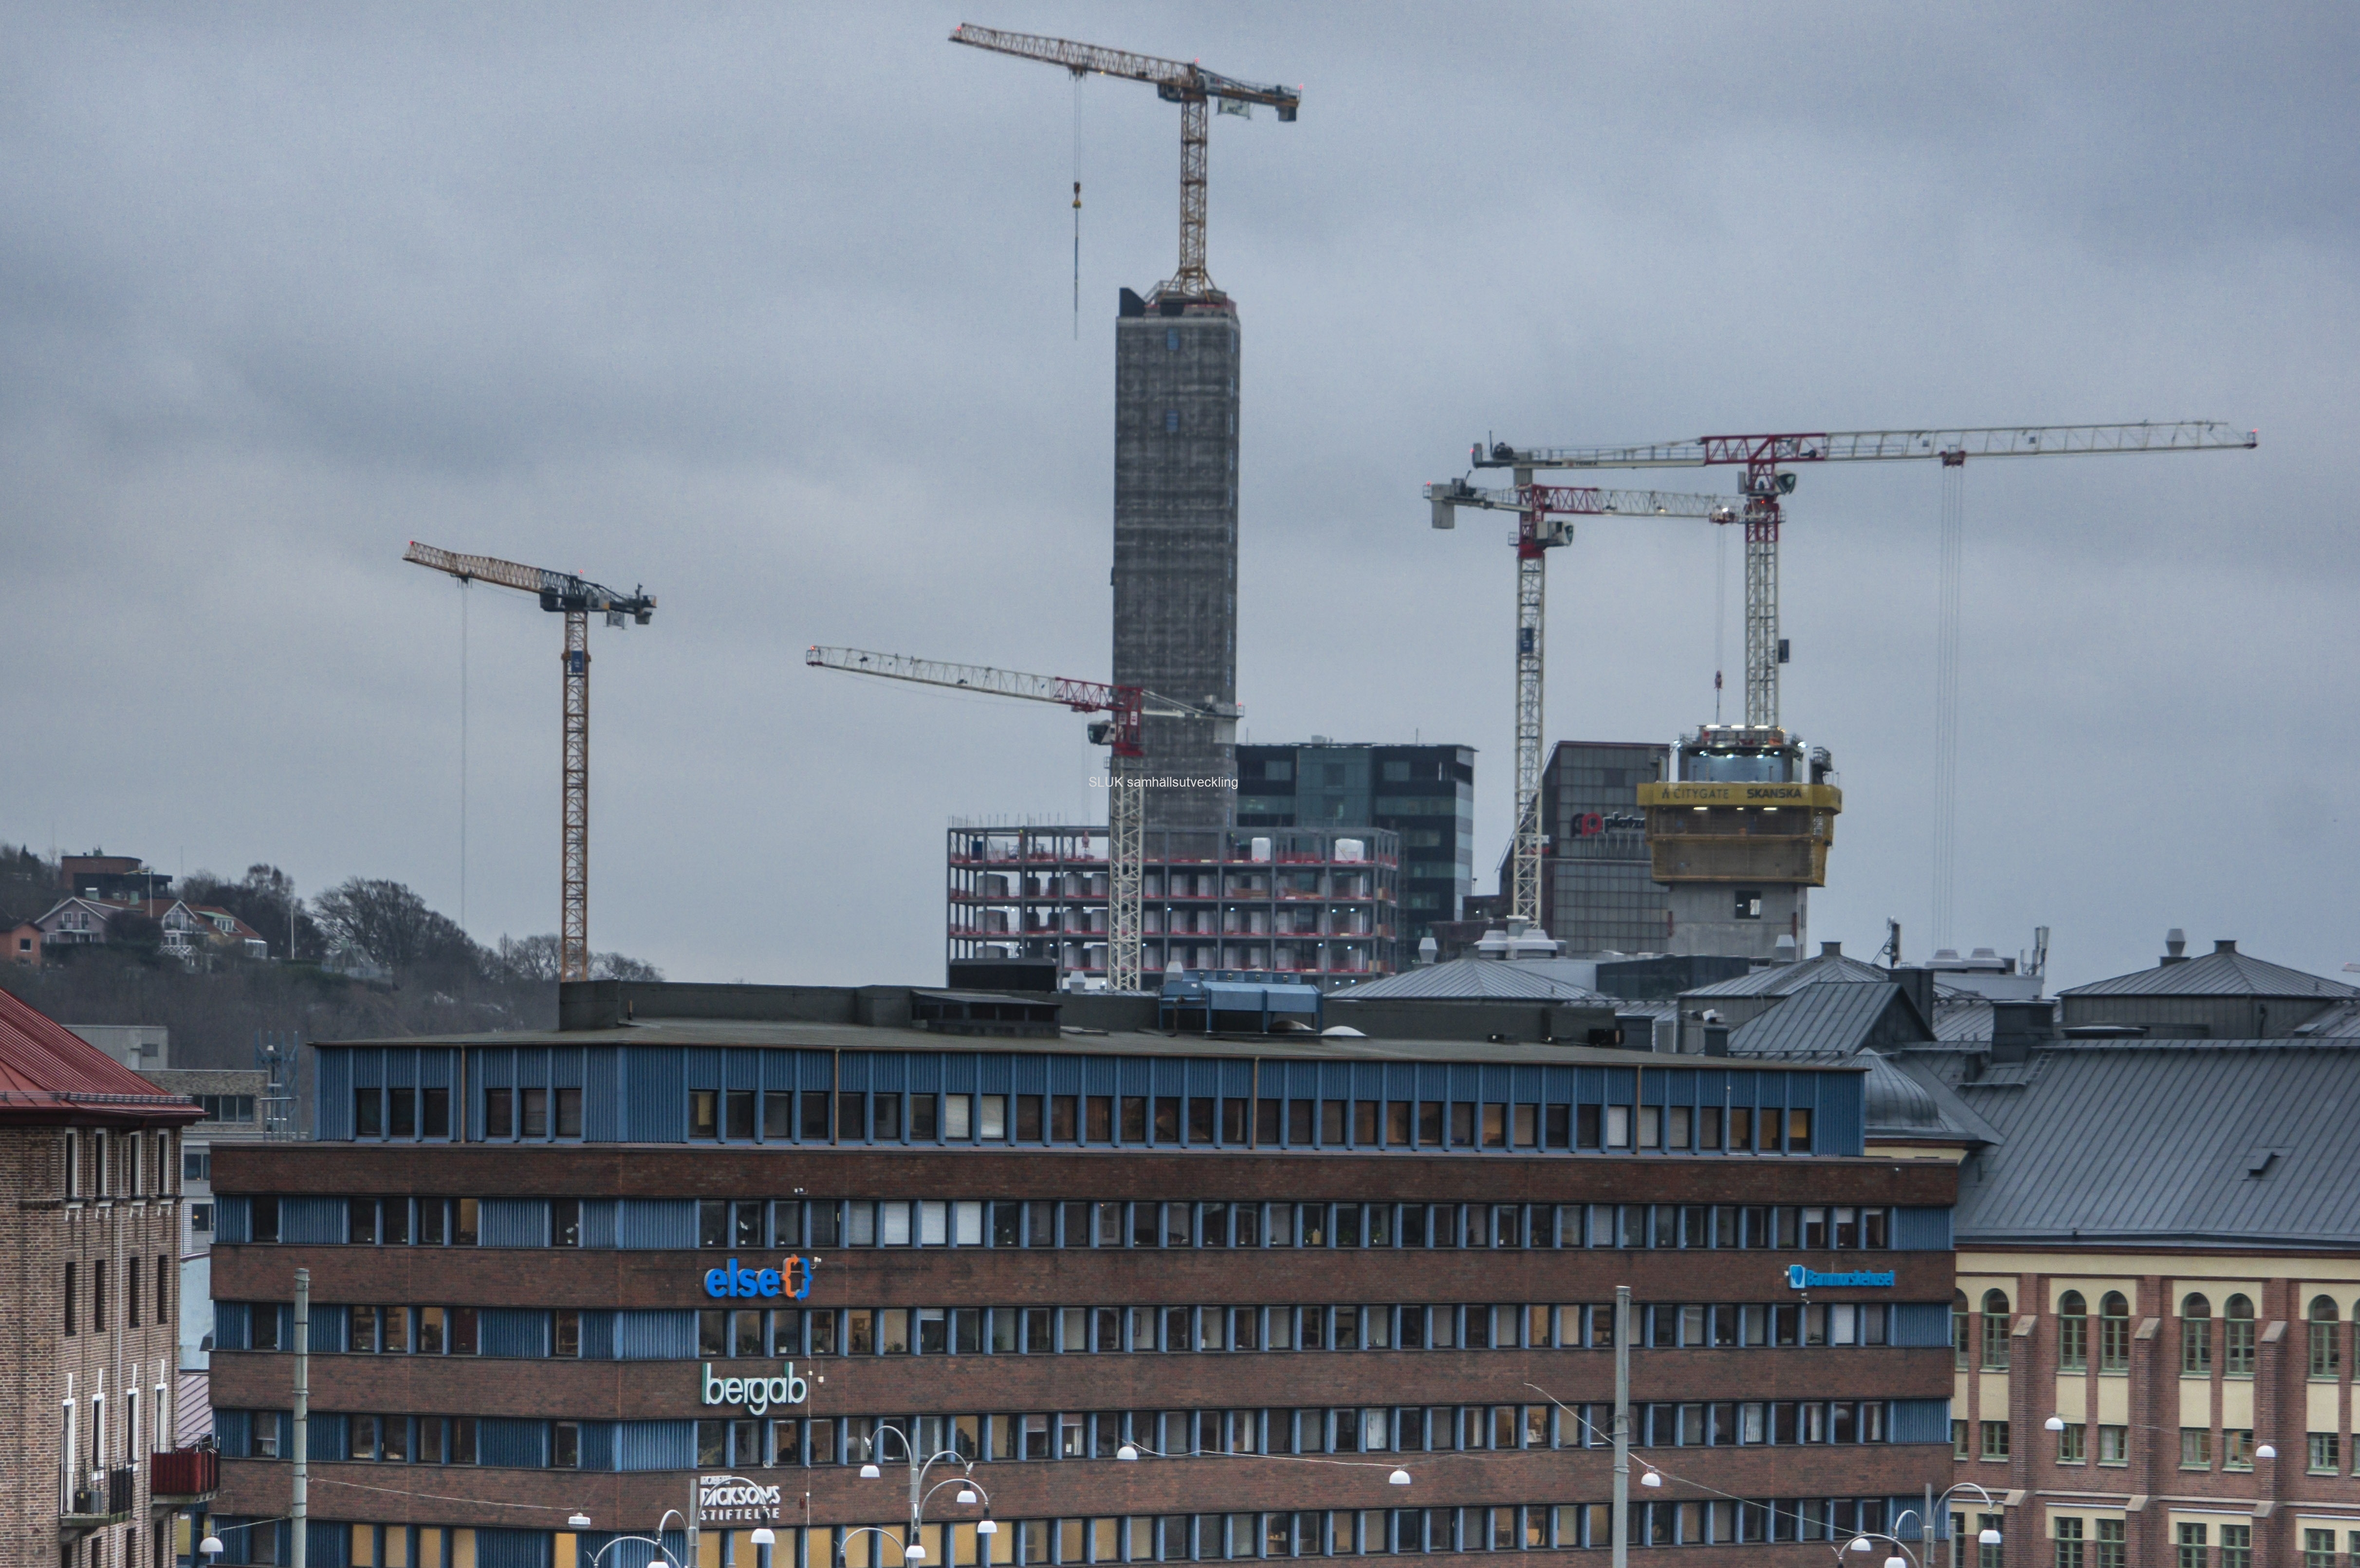 Citygate blir ett nytt landmärke i Göteborg. Med sina 36 våningar och 144 meter blir byggnaden Nordens högsta kontorshus